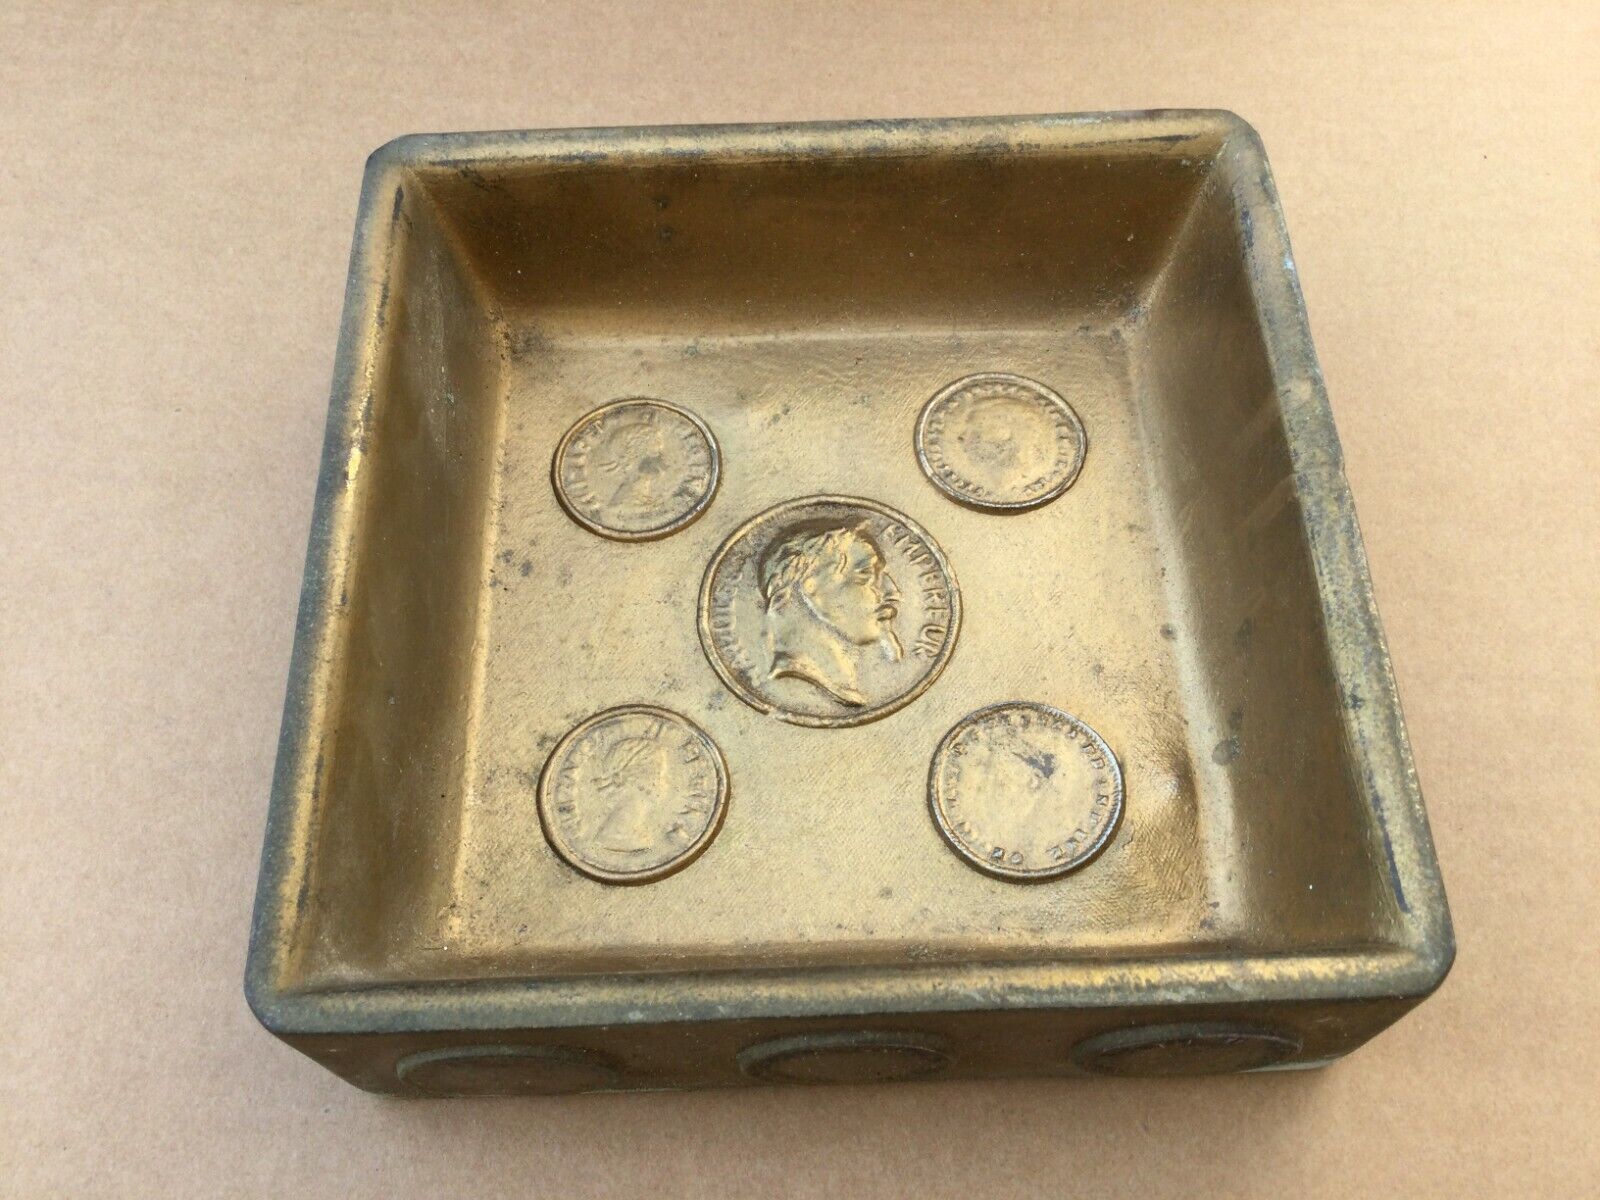 Original Handmade Cast Brass Ashtray with Coin Replicas 